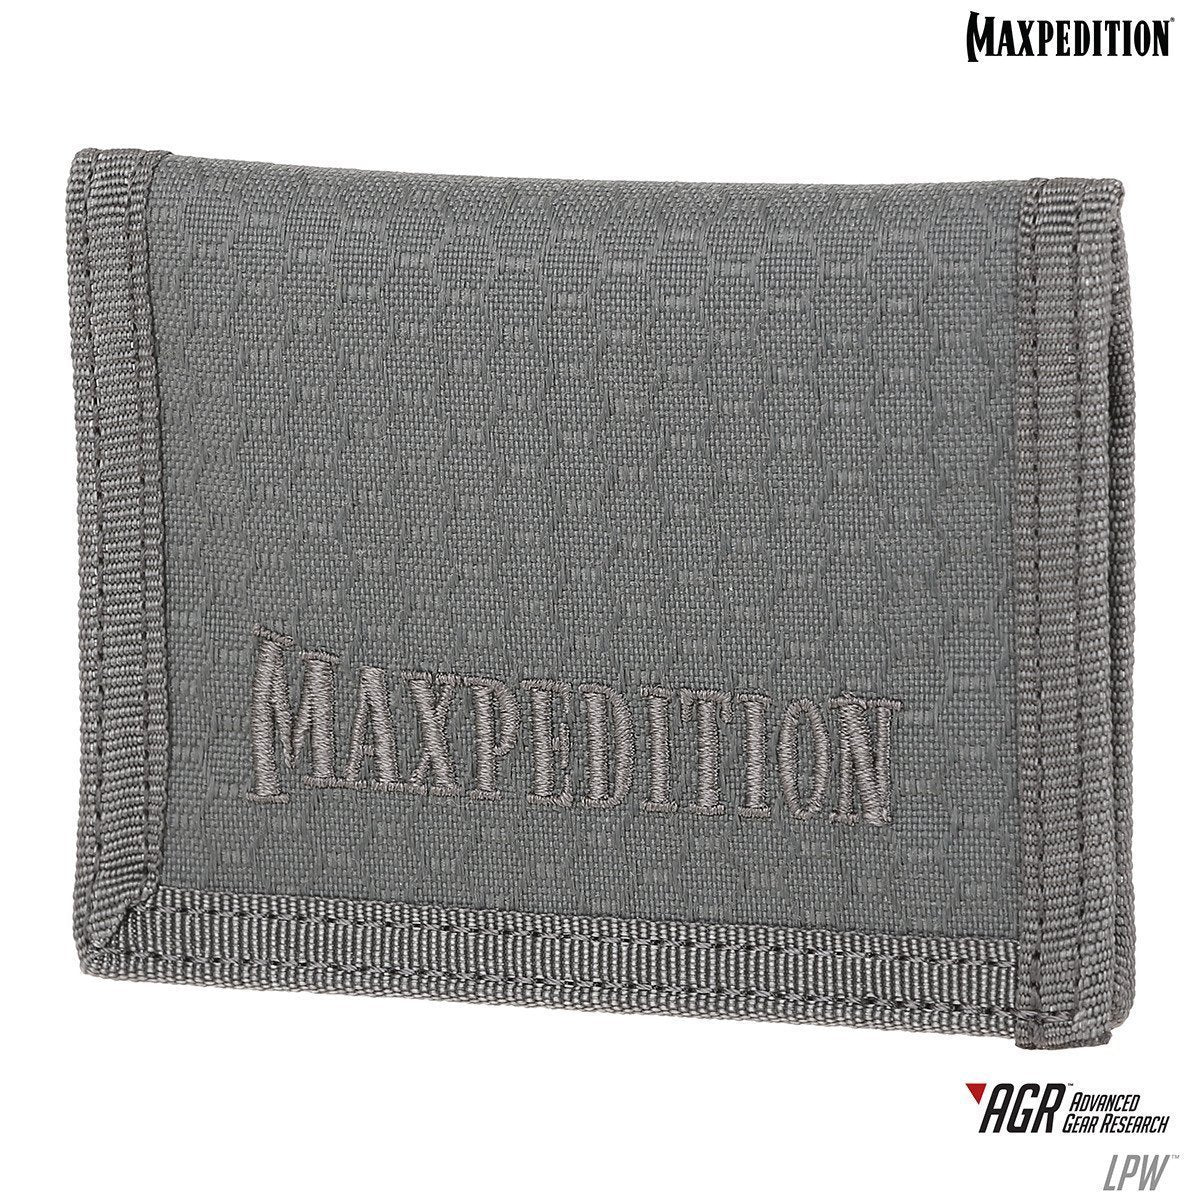 Maxpedition LPW Low Profile Wallet Gray Tactical Distributors Ltd New Zealand